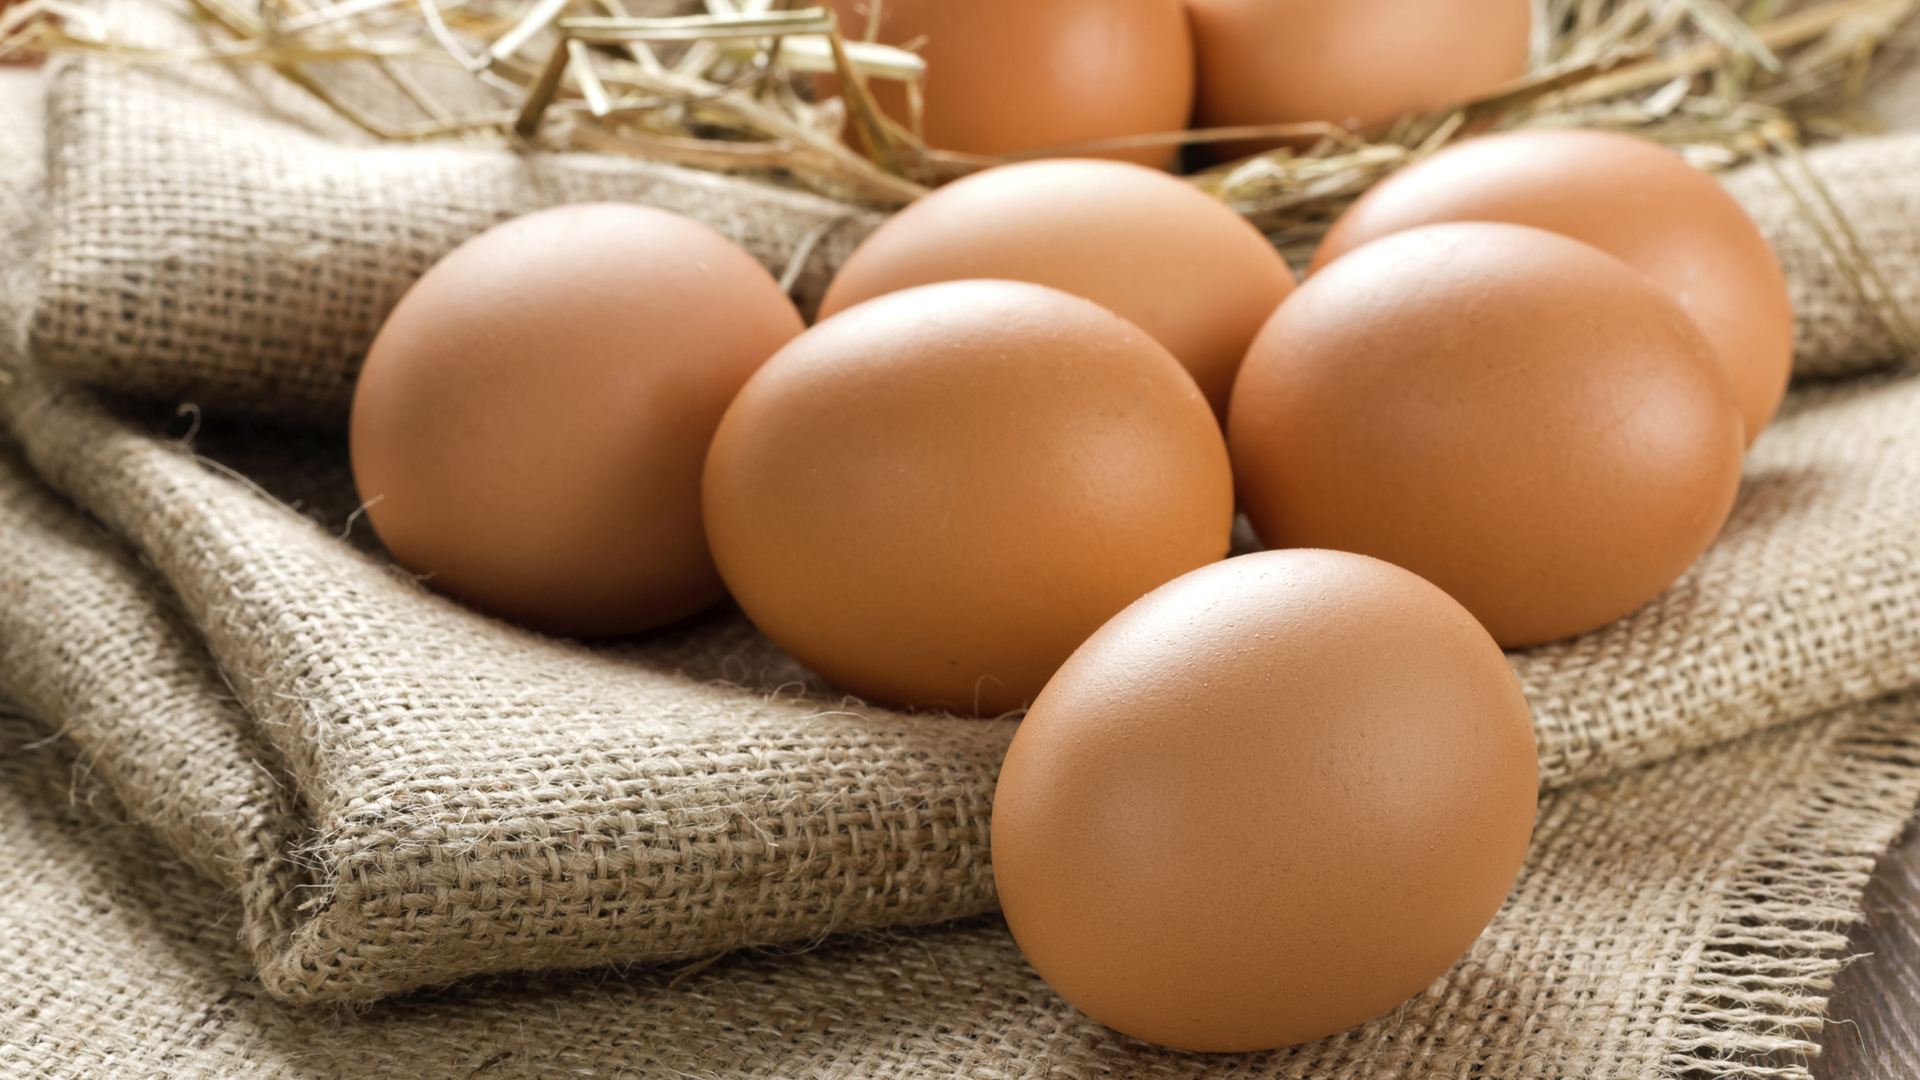 La gripe aviar no se transmite a las personas por el consumo de pollos, pavos o huevos/Archivo